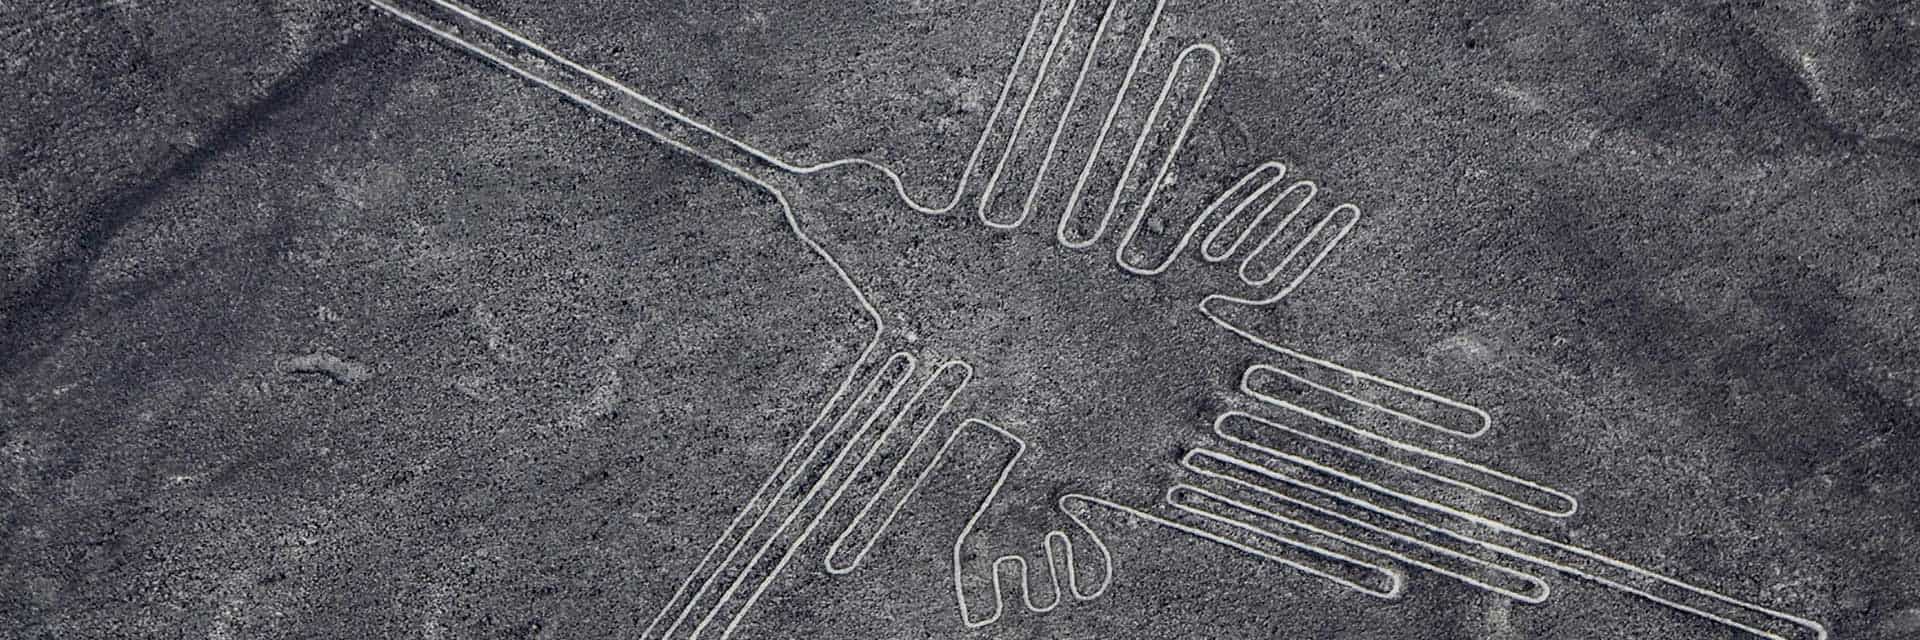 Paracas – Lineas de Nazca,